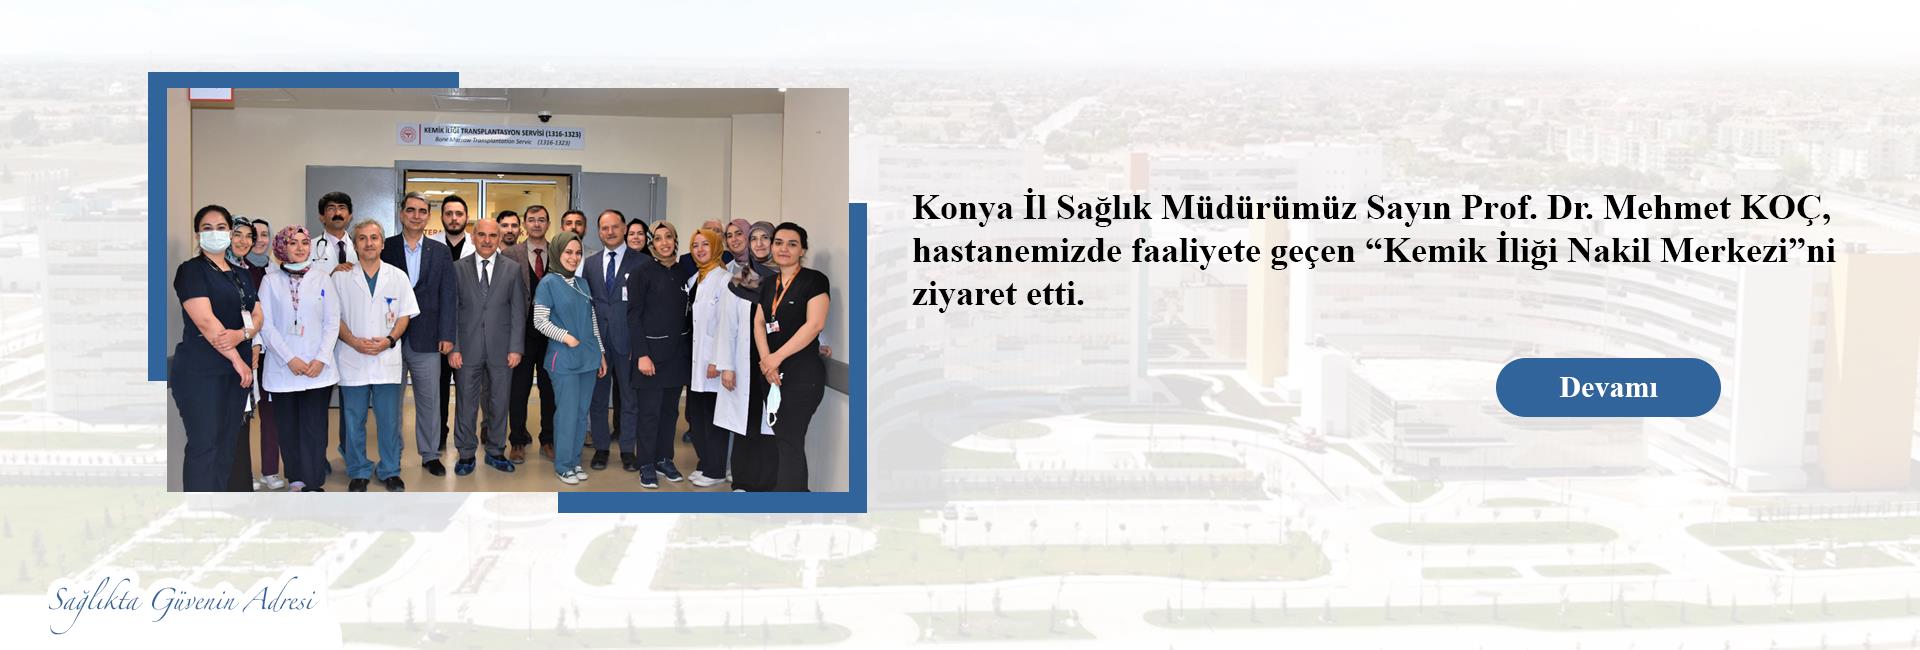 Konya İl Sağlık Müdürümüz Sayın Prof. Dr. Mehmet KOÇ, hastanemizde faaliyete geçen “Kemik İliği Nakil Merkezi” ni ziyaret etti. 